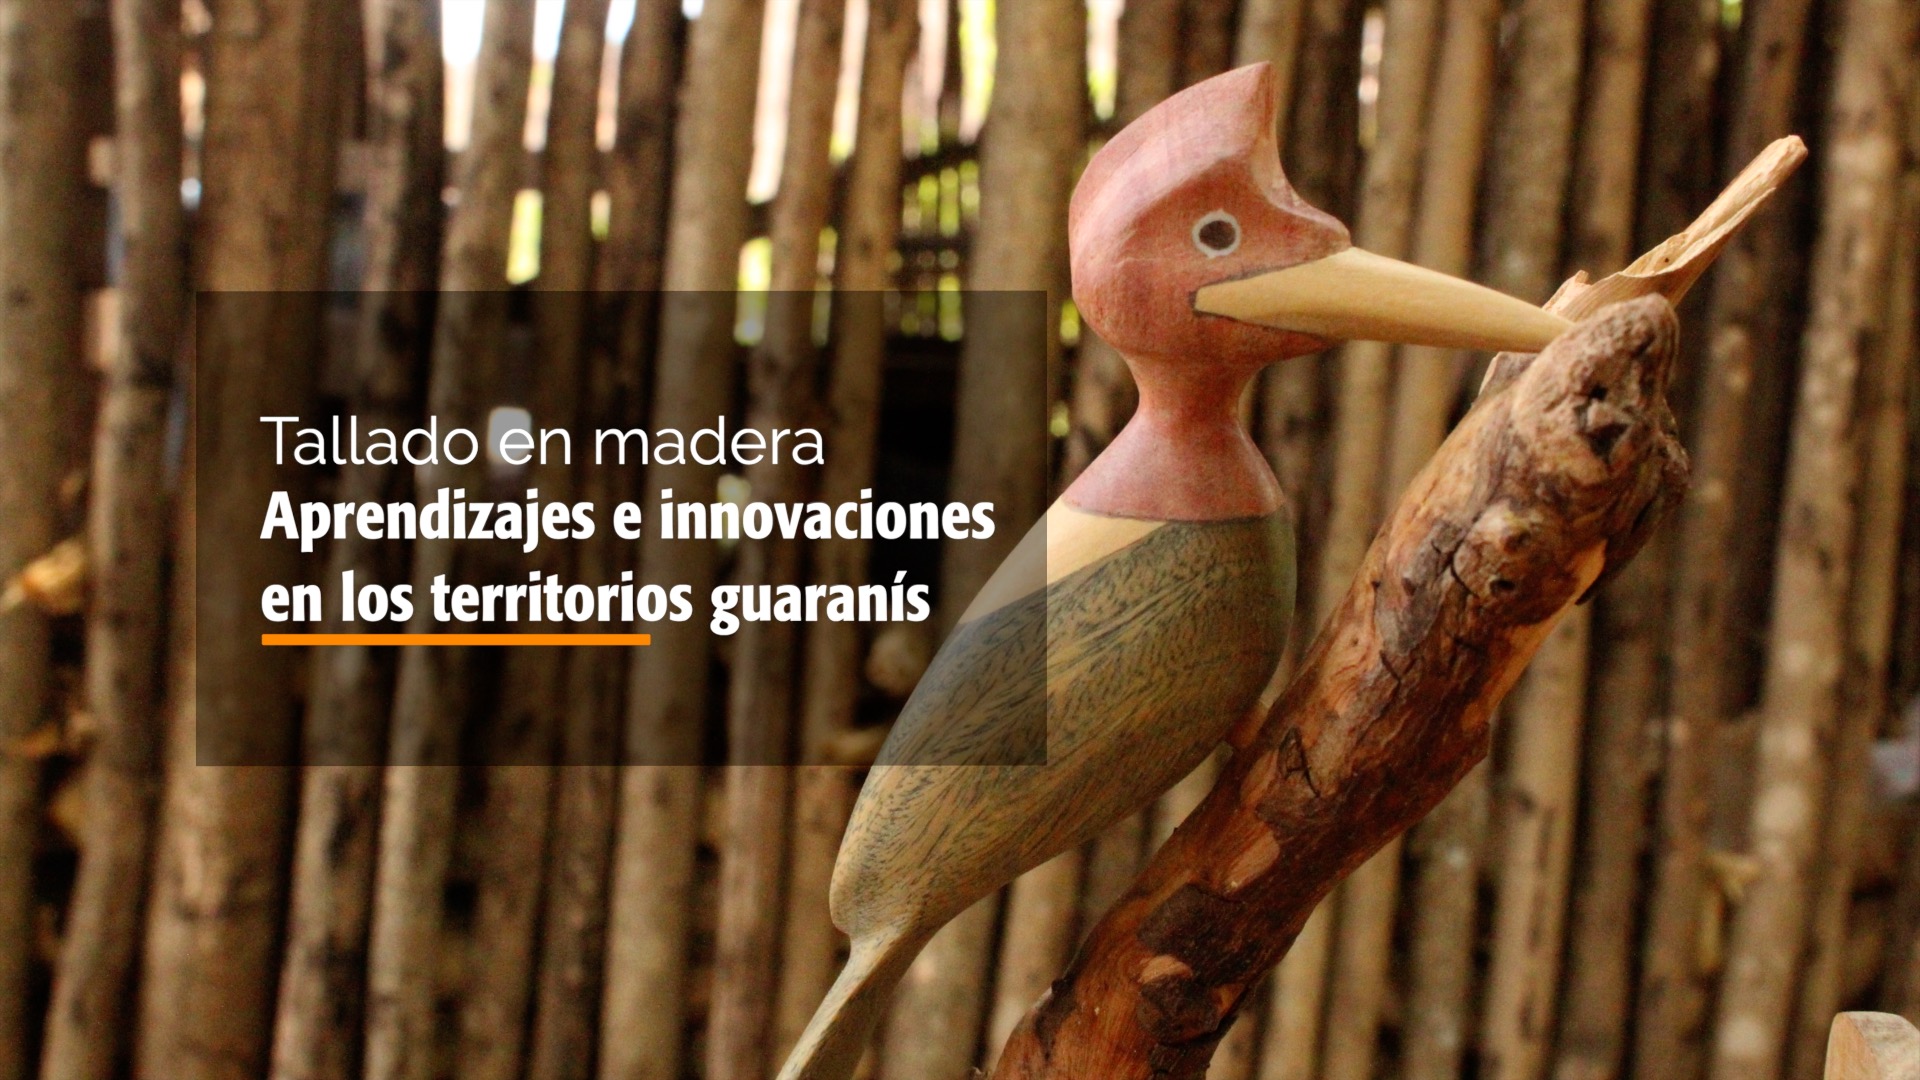 Nuevo video sobre innovaciones en tallado de madera en comunidades guaraníes de Bolivia